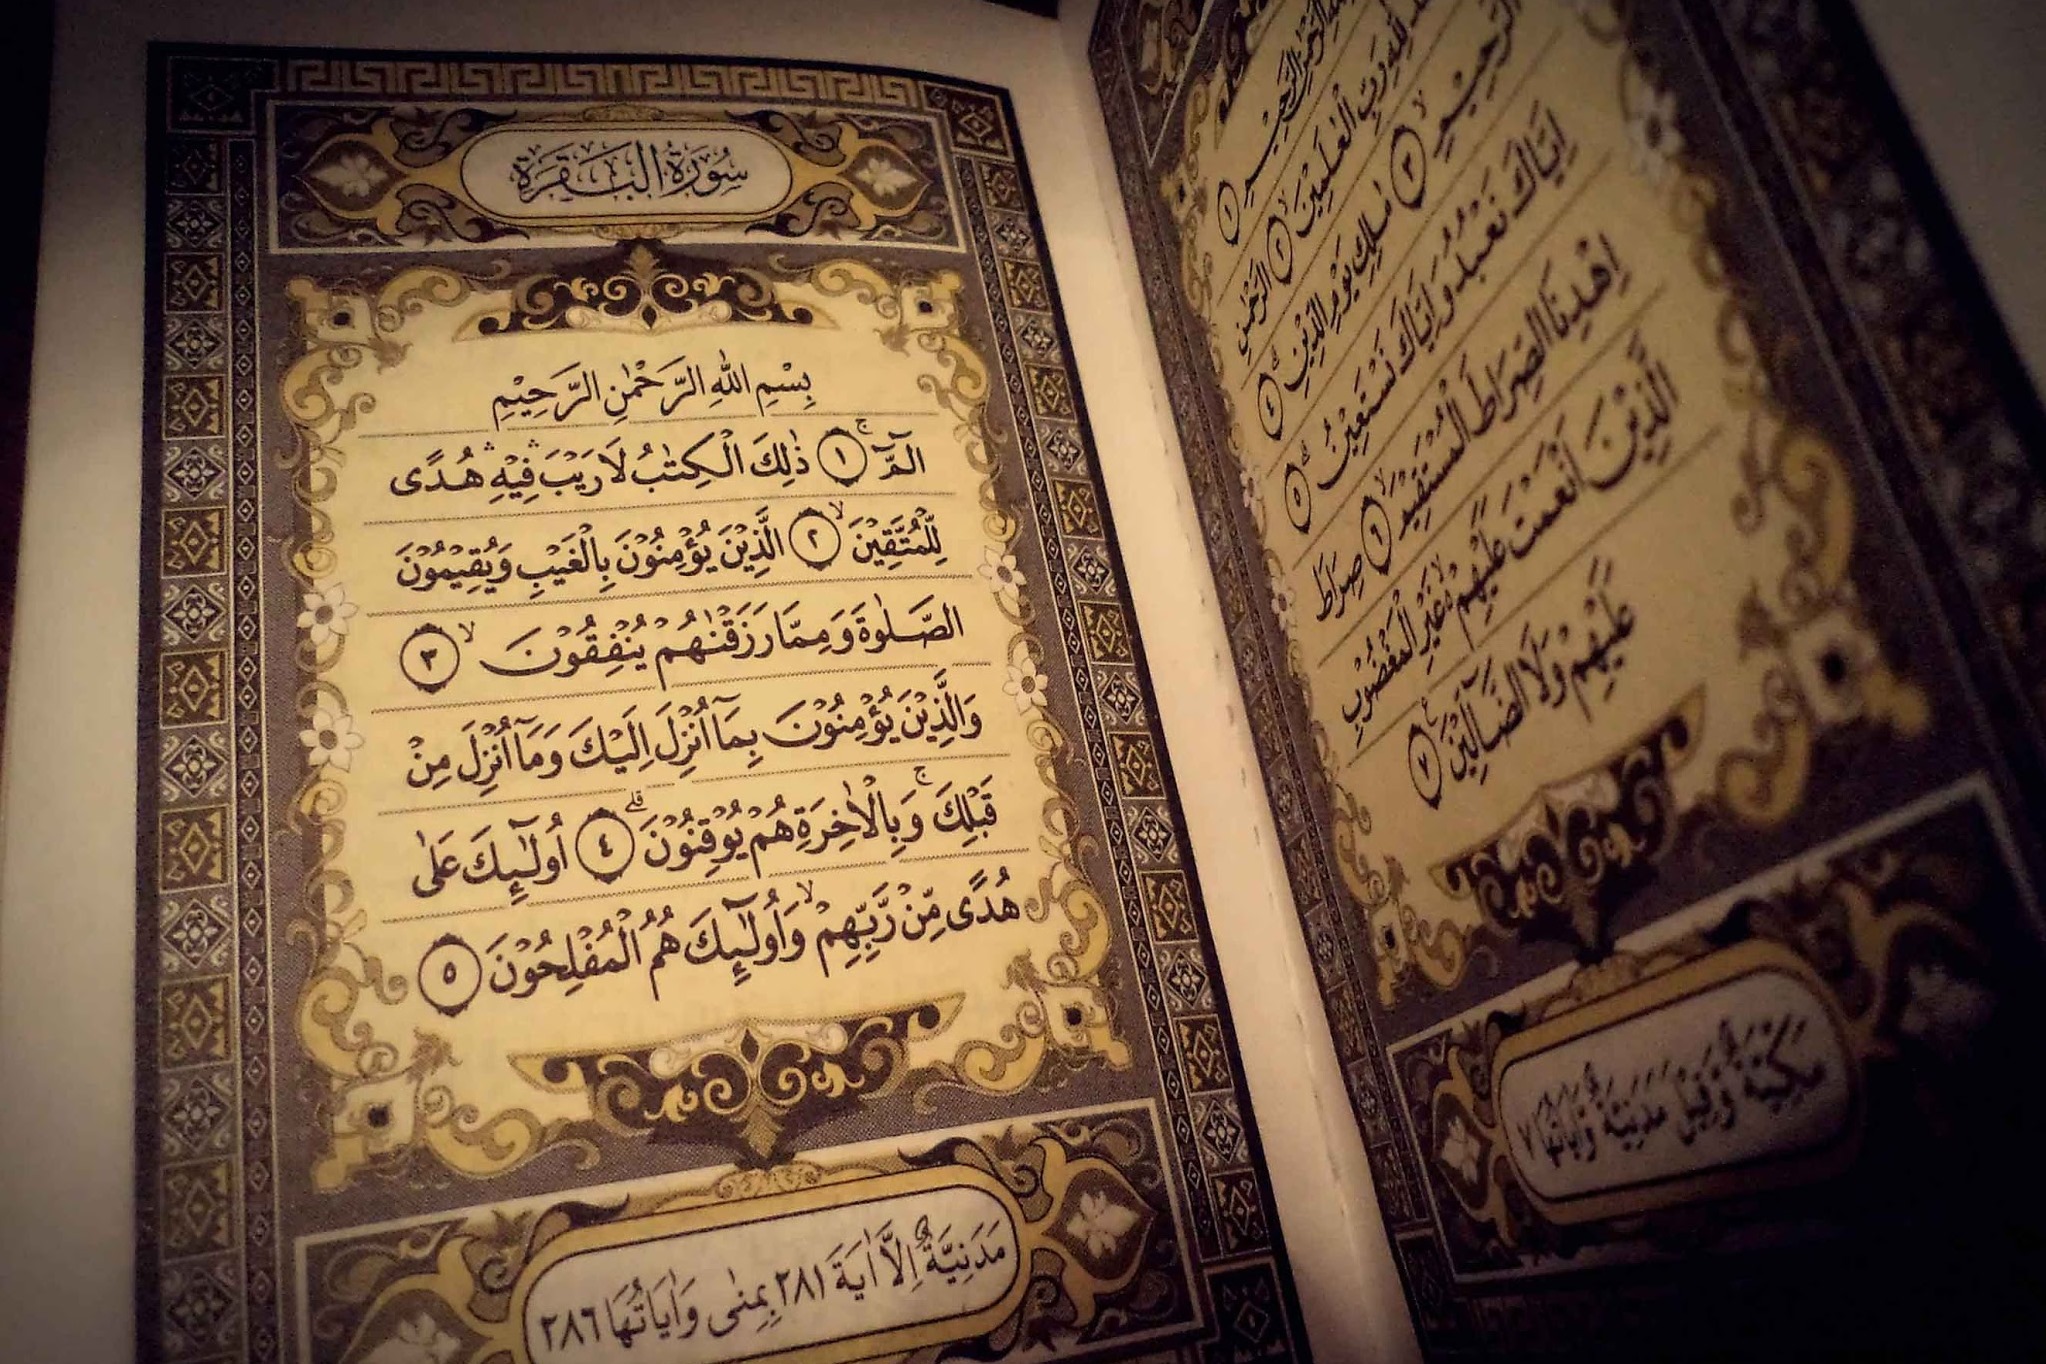 La Luce del Corano-Esegesi del Sacro Corano,vol 1 - Parte 39 - Sura Al-Bagharah - versetti 91-93